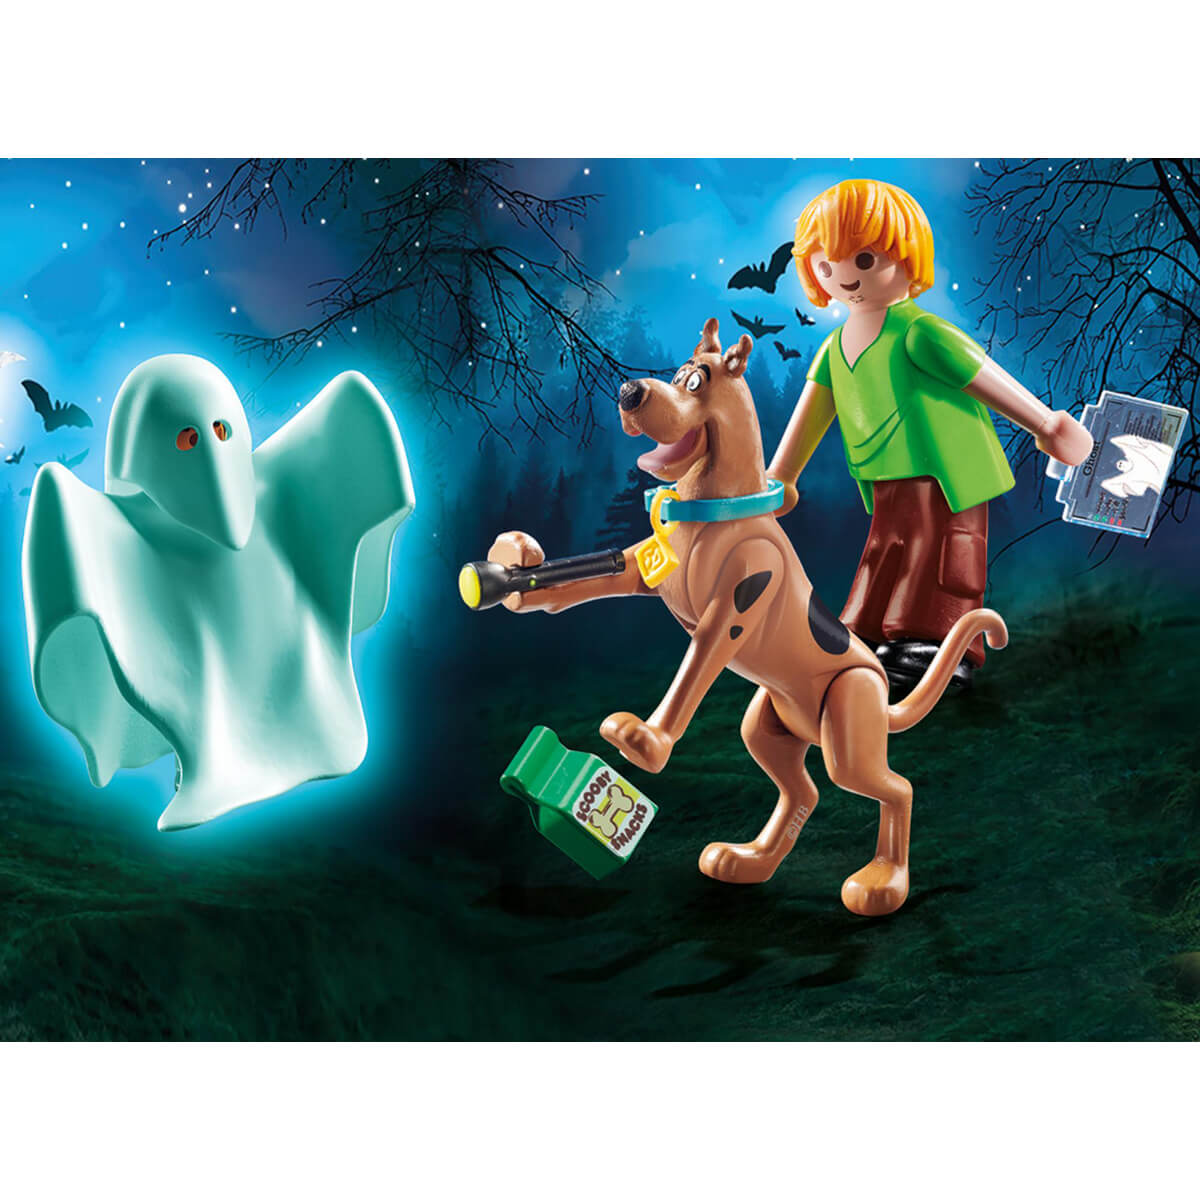 ΠΑΙΔΙ | Παιχνίδια | PLAYMOBIL | SCOOBY-DOO! (UNISEX 5-12 ΕΤΩΝ) Ο Σκούμπι και ο Σάγκι με ένα φάντασμα